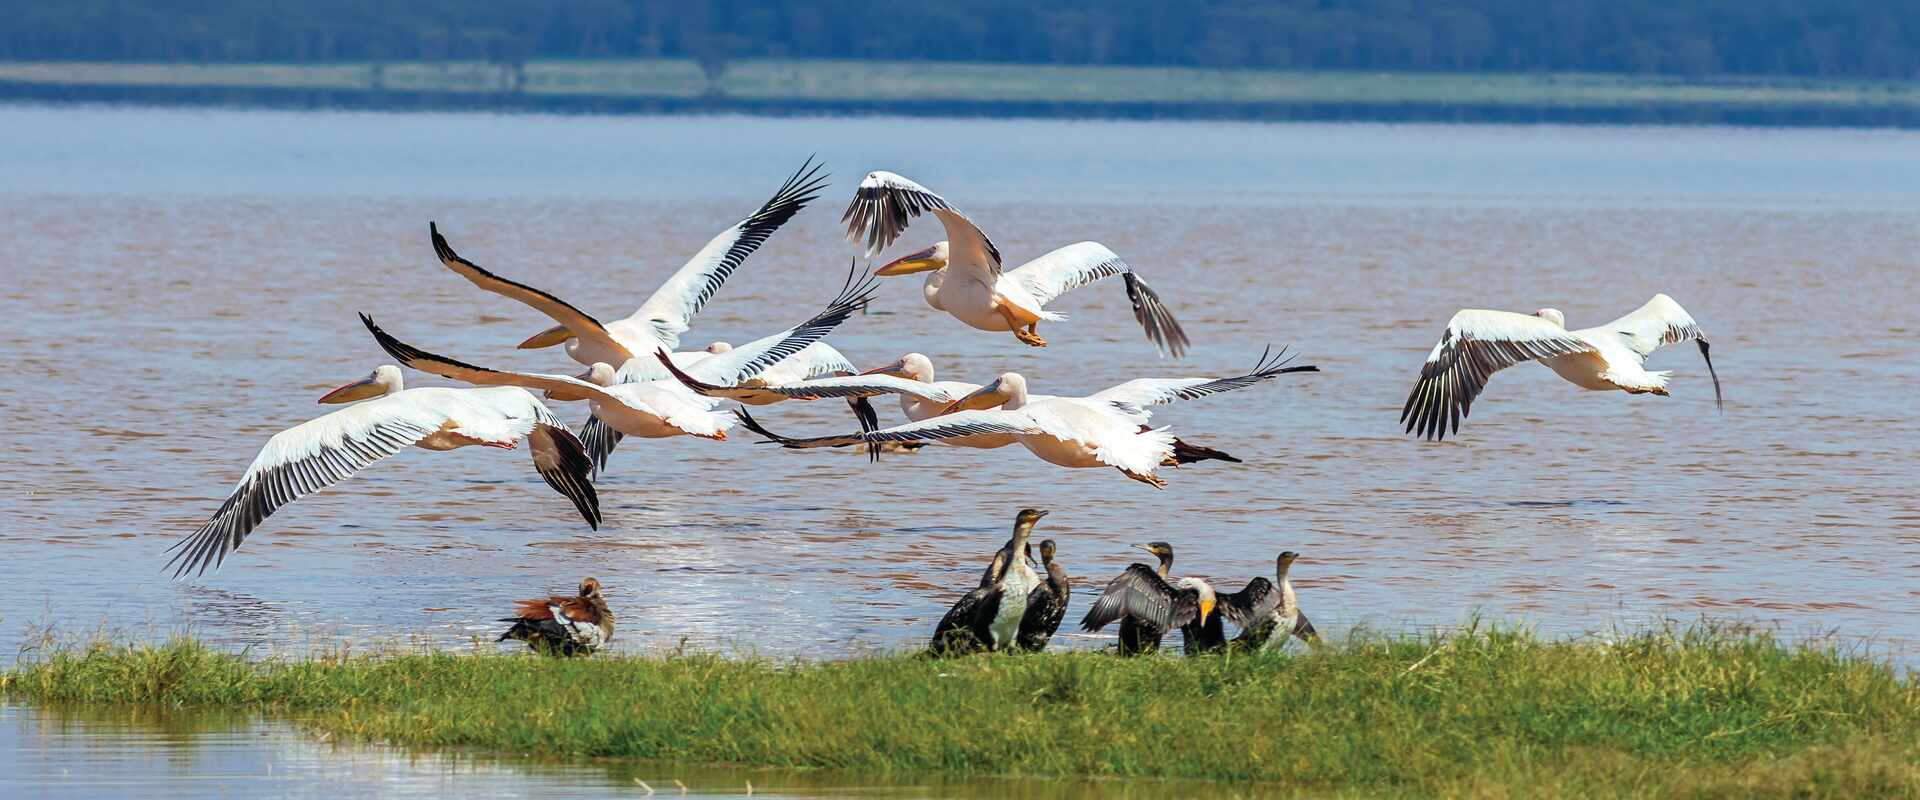 View of birds above lake at Nakuru national park, kenya